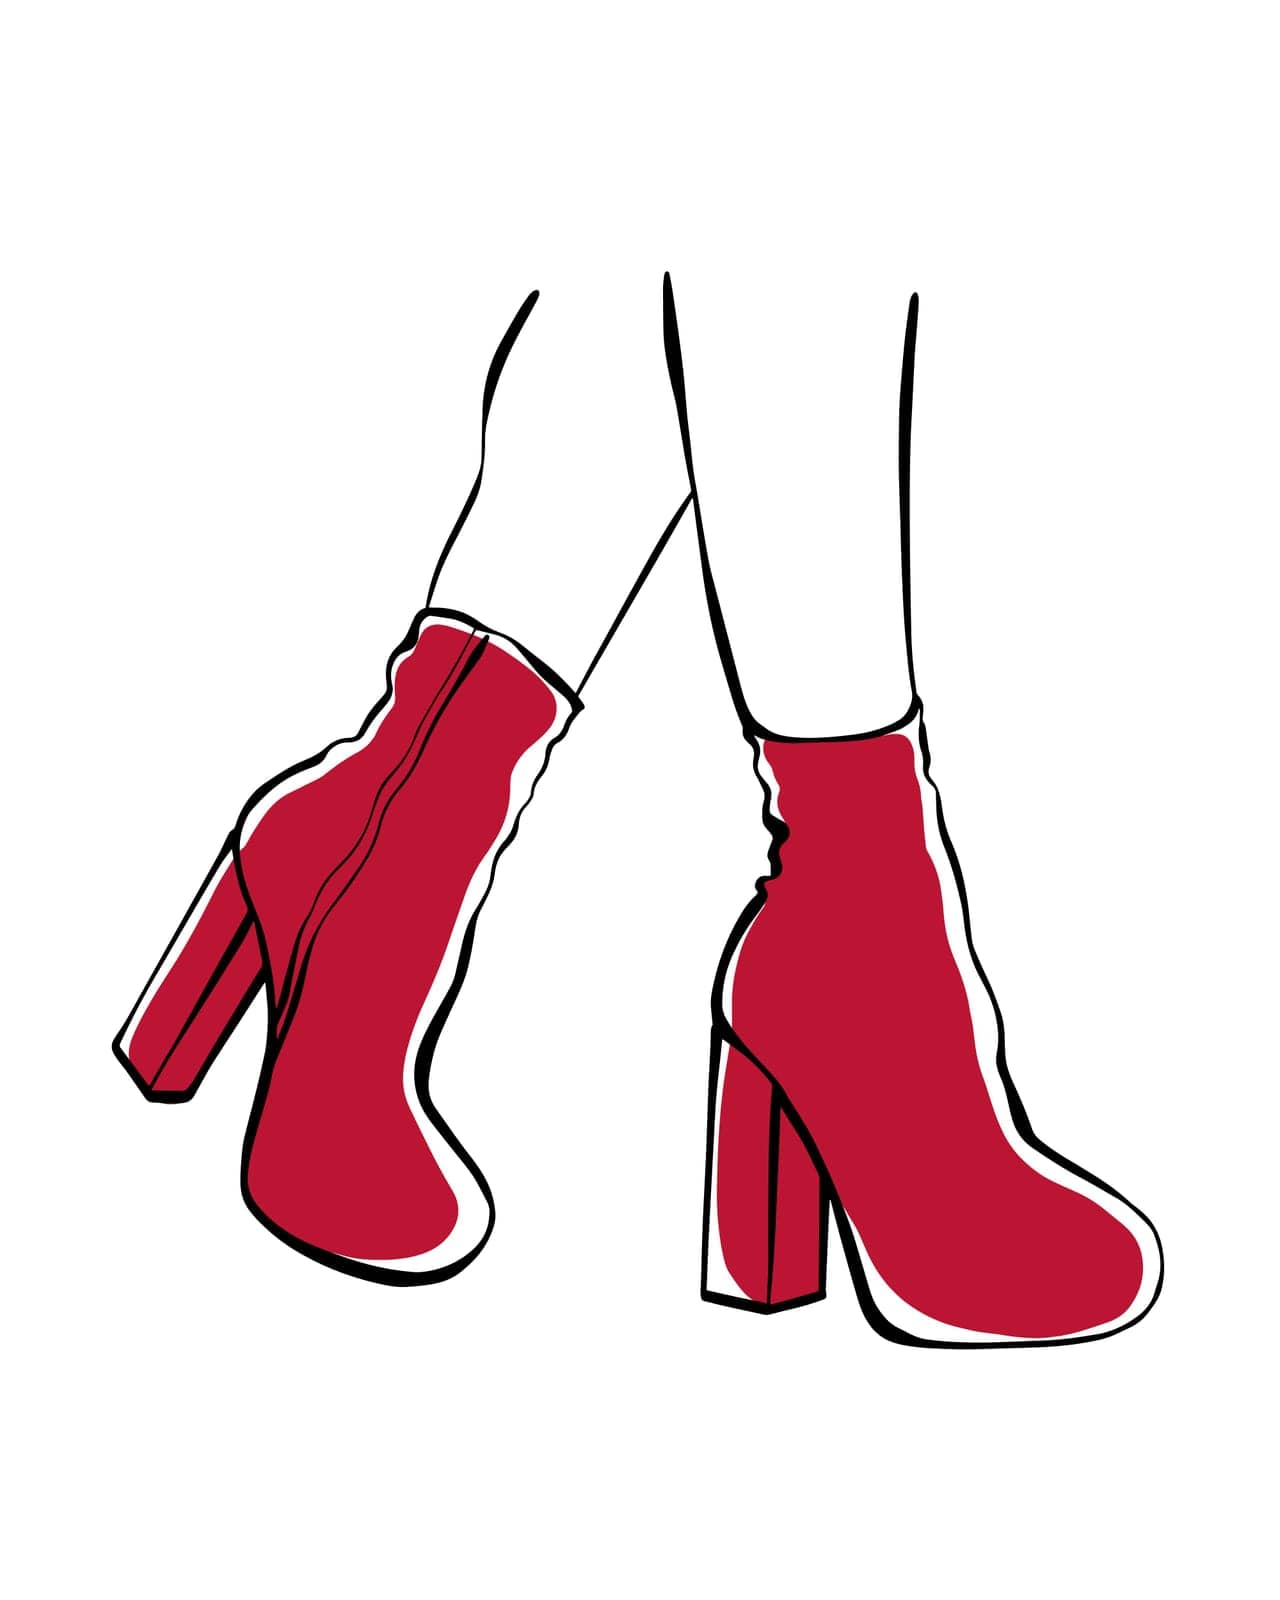 Womens feet in high heels by Dustick